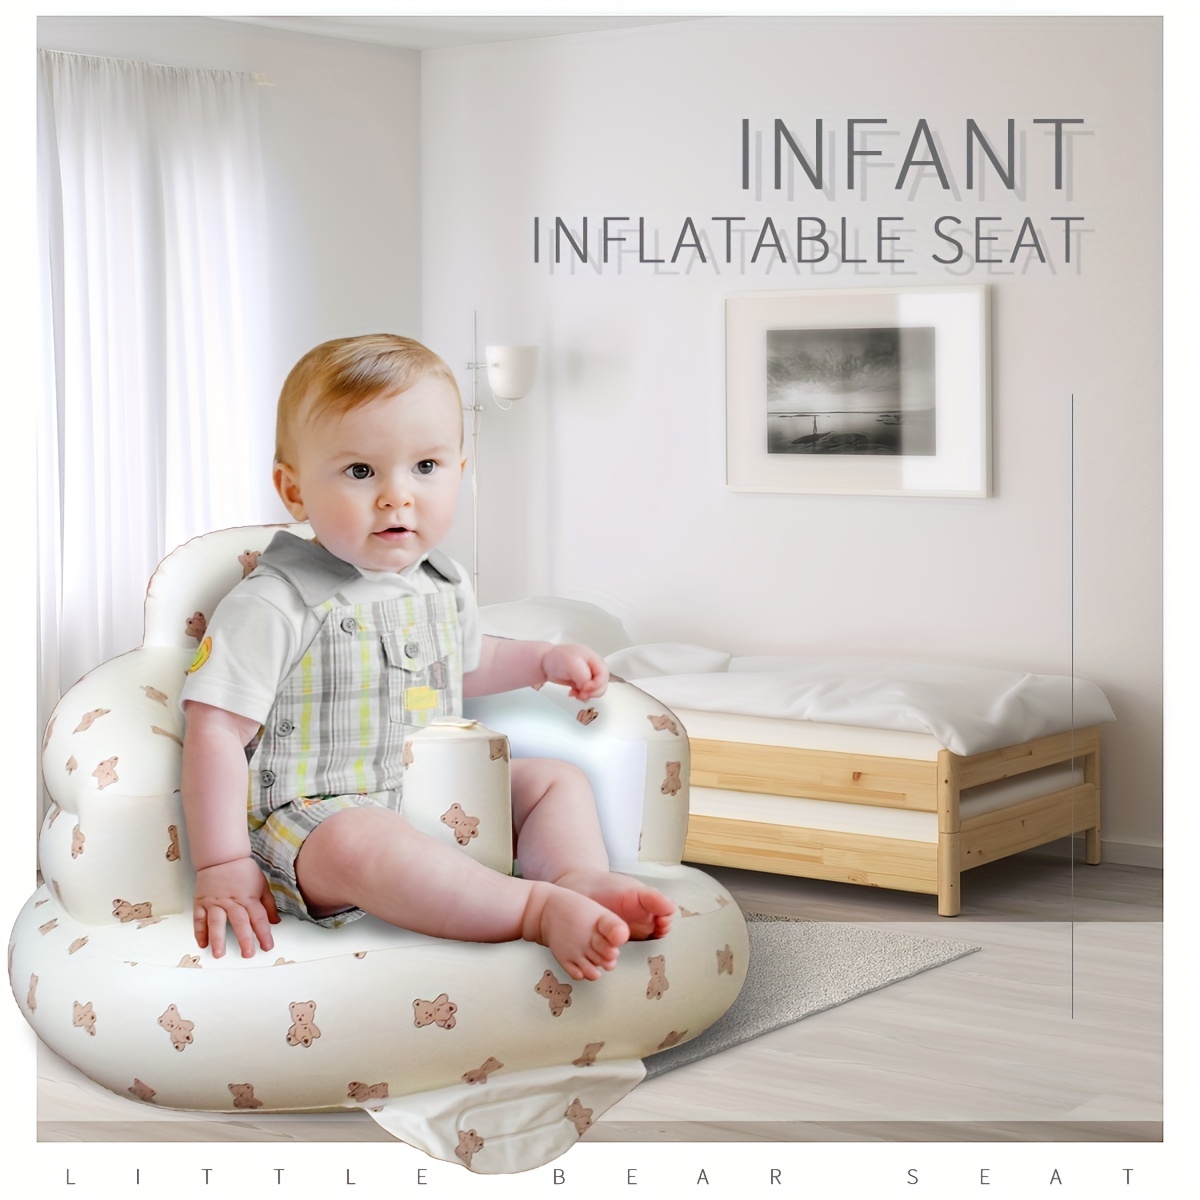  Asiento de baño para bebé  Asiento de bañera portátil para  niños pequeños con respaldo y ventosas, silla de baño para bebés de 6 a 18  meses, regalo para recién nacidos : Bebés